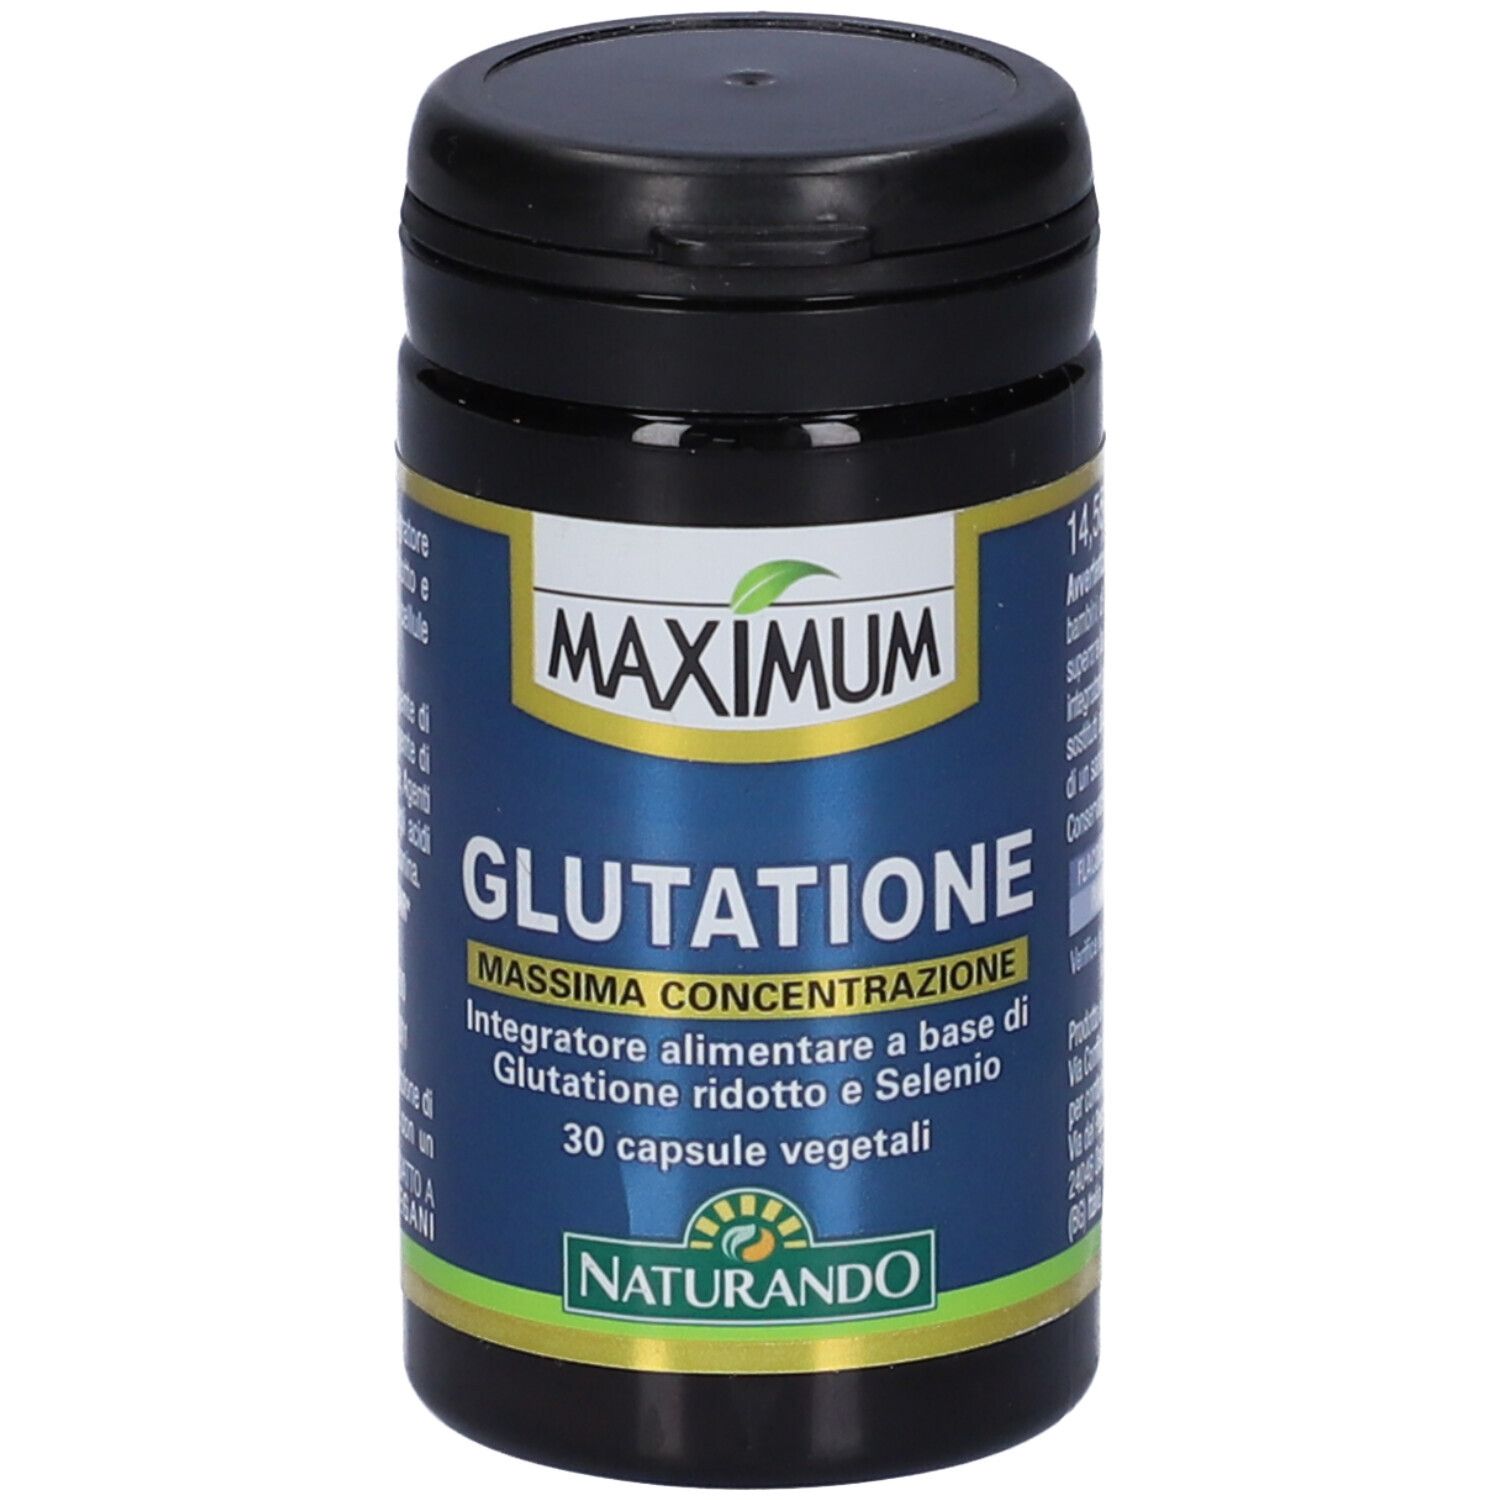 Image of Glutatione Maximum 30 Capsule